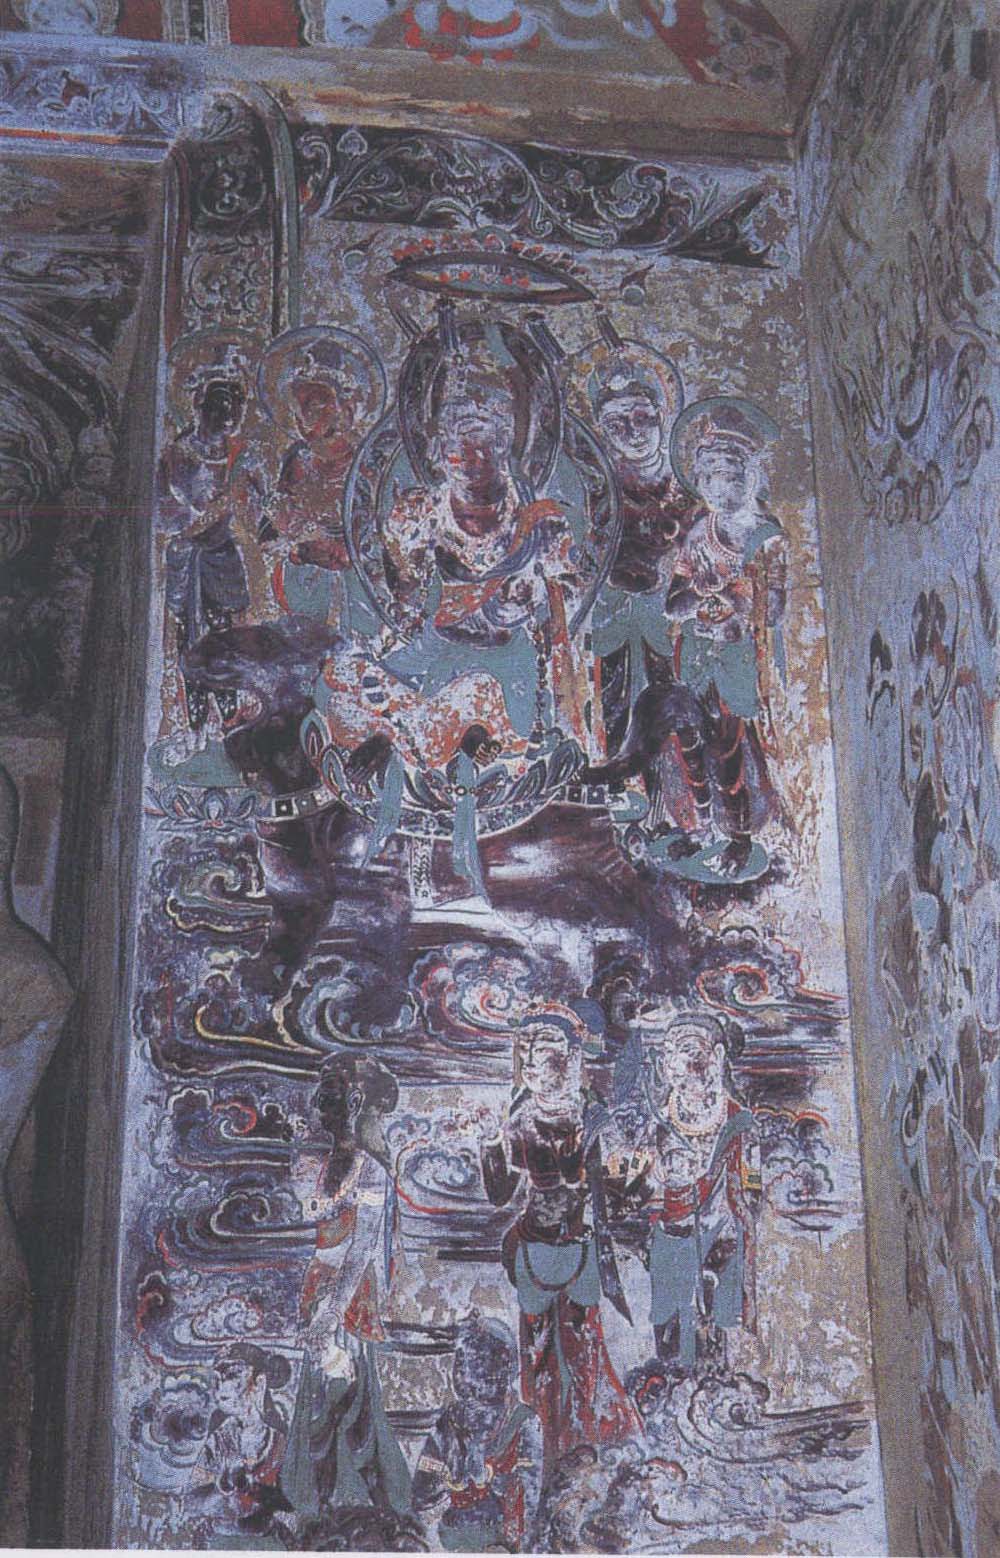 图21 莫高窟第220窟佛龛北侧骑狮文殊菩萨图贞观十六年(642)